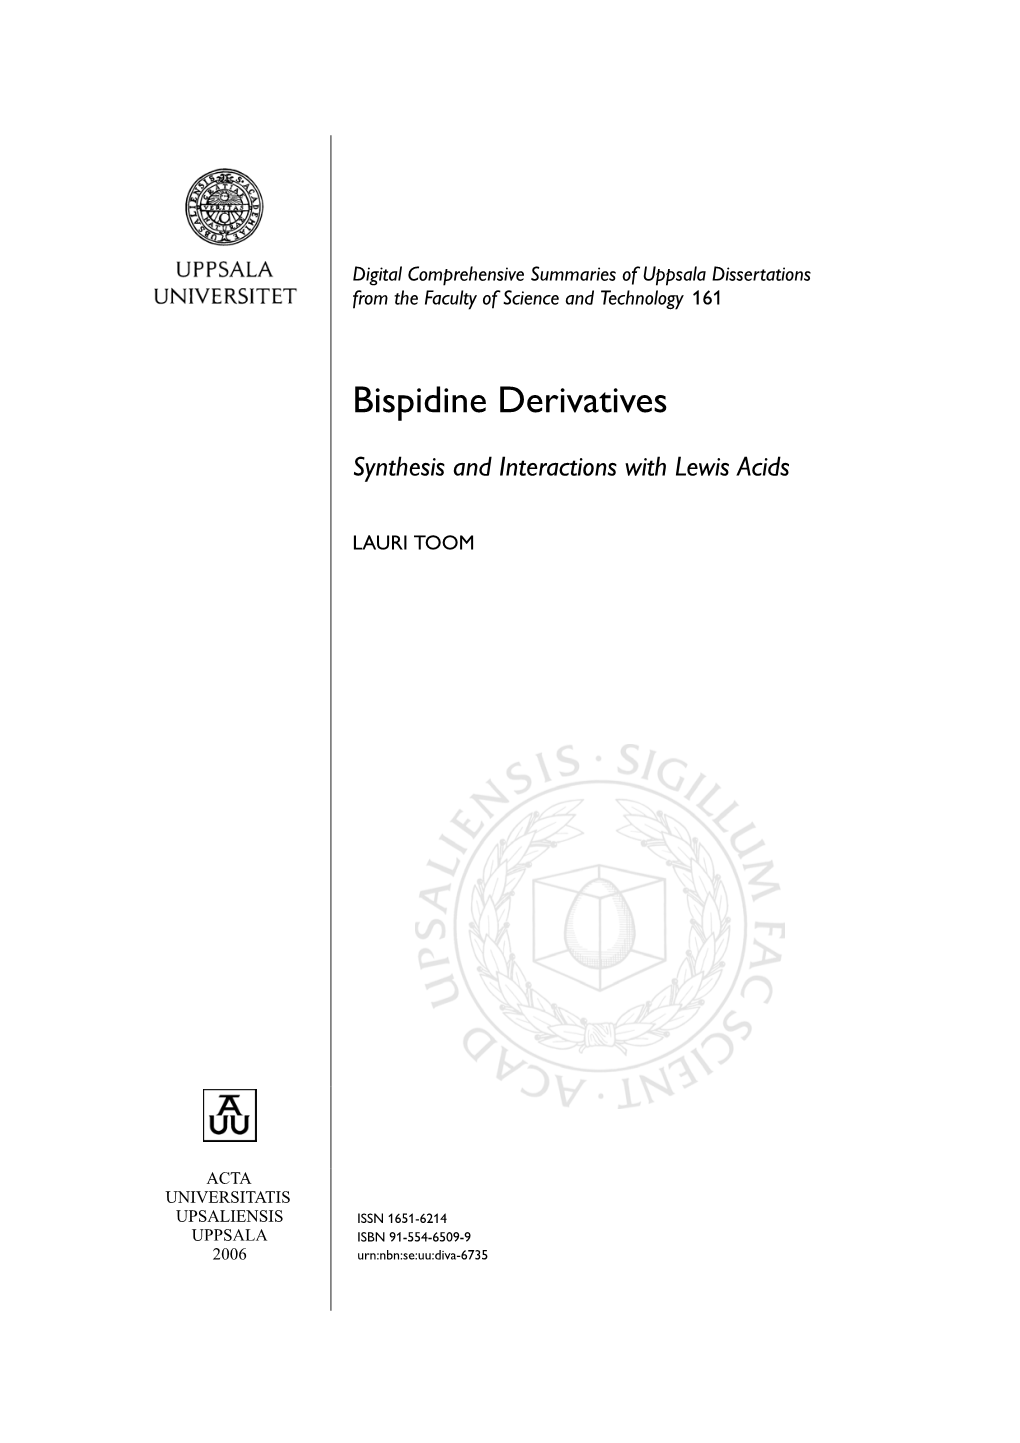 Bispidine Derivatives